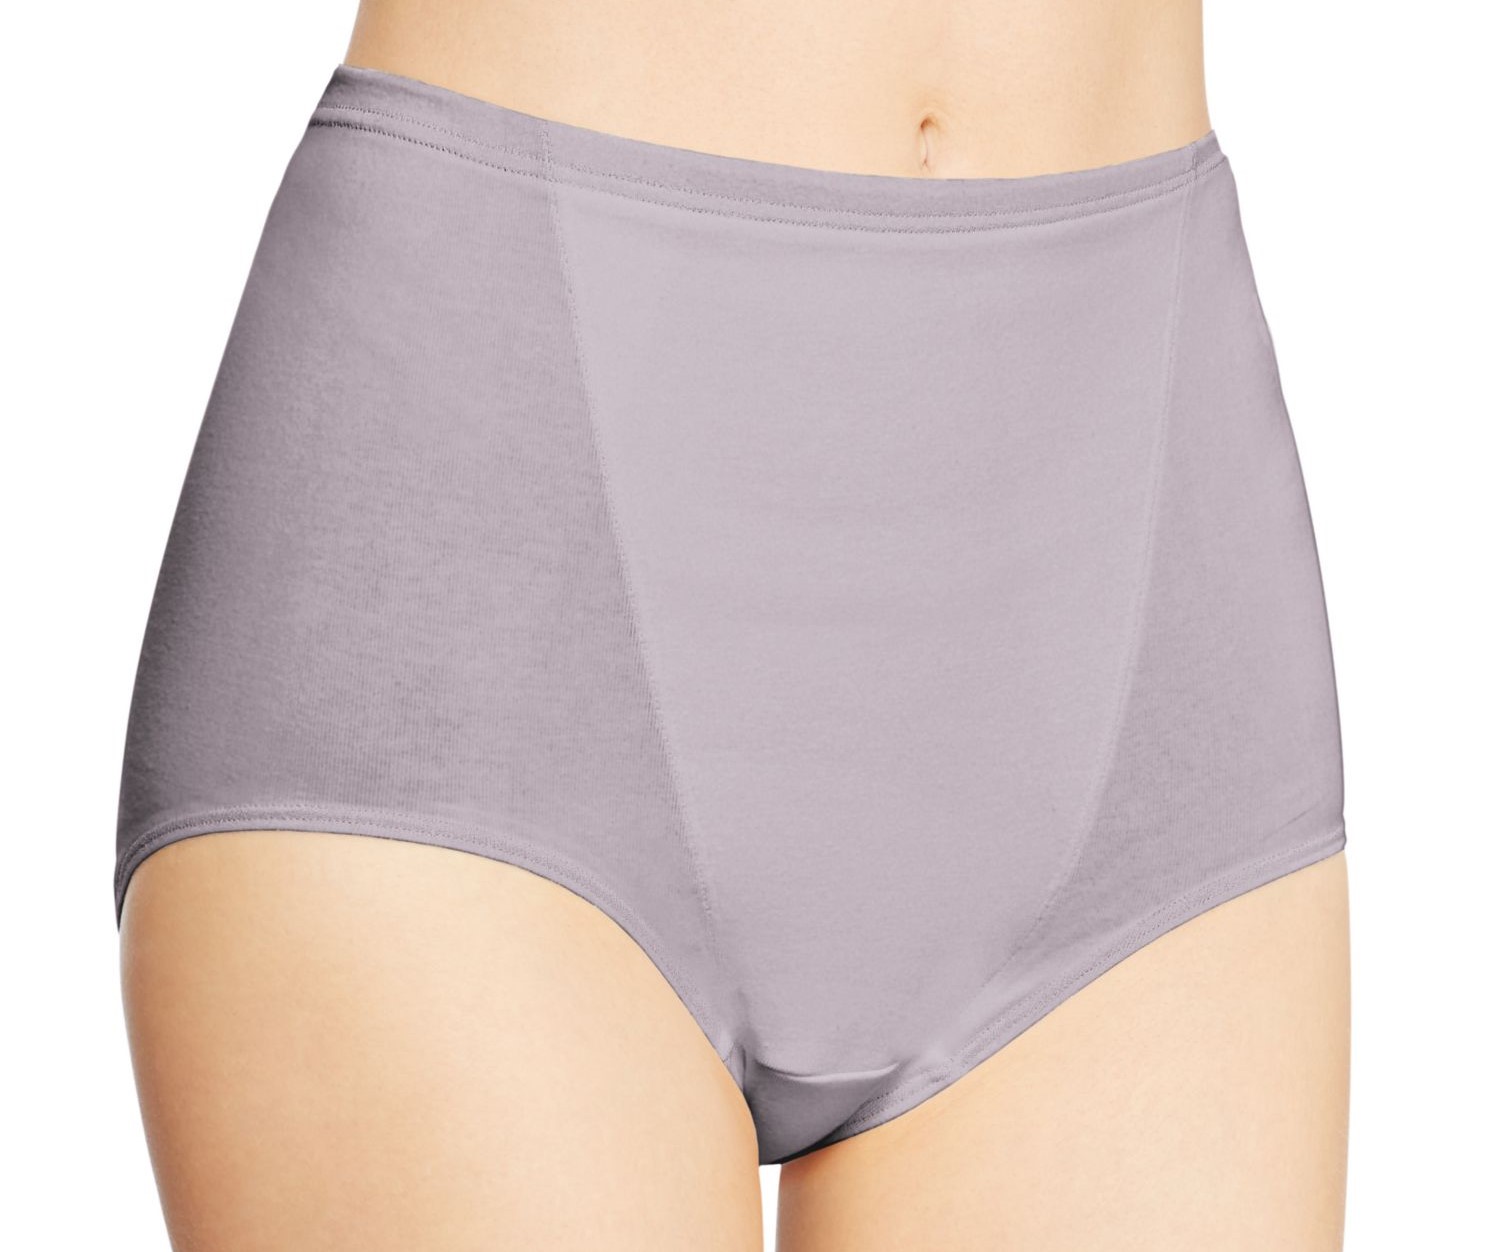 10 Best Hanes X-Temp Underwear For Women For 2023